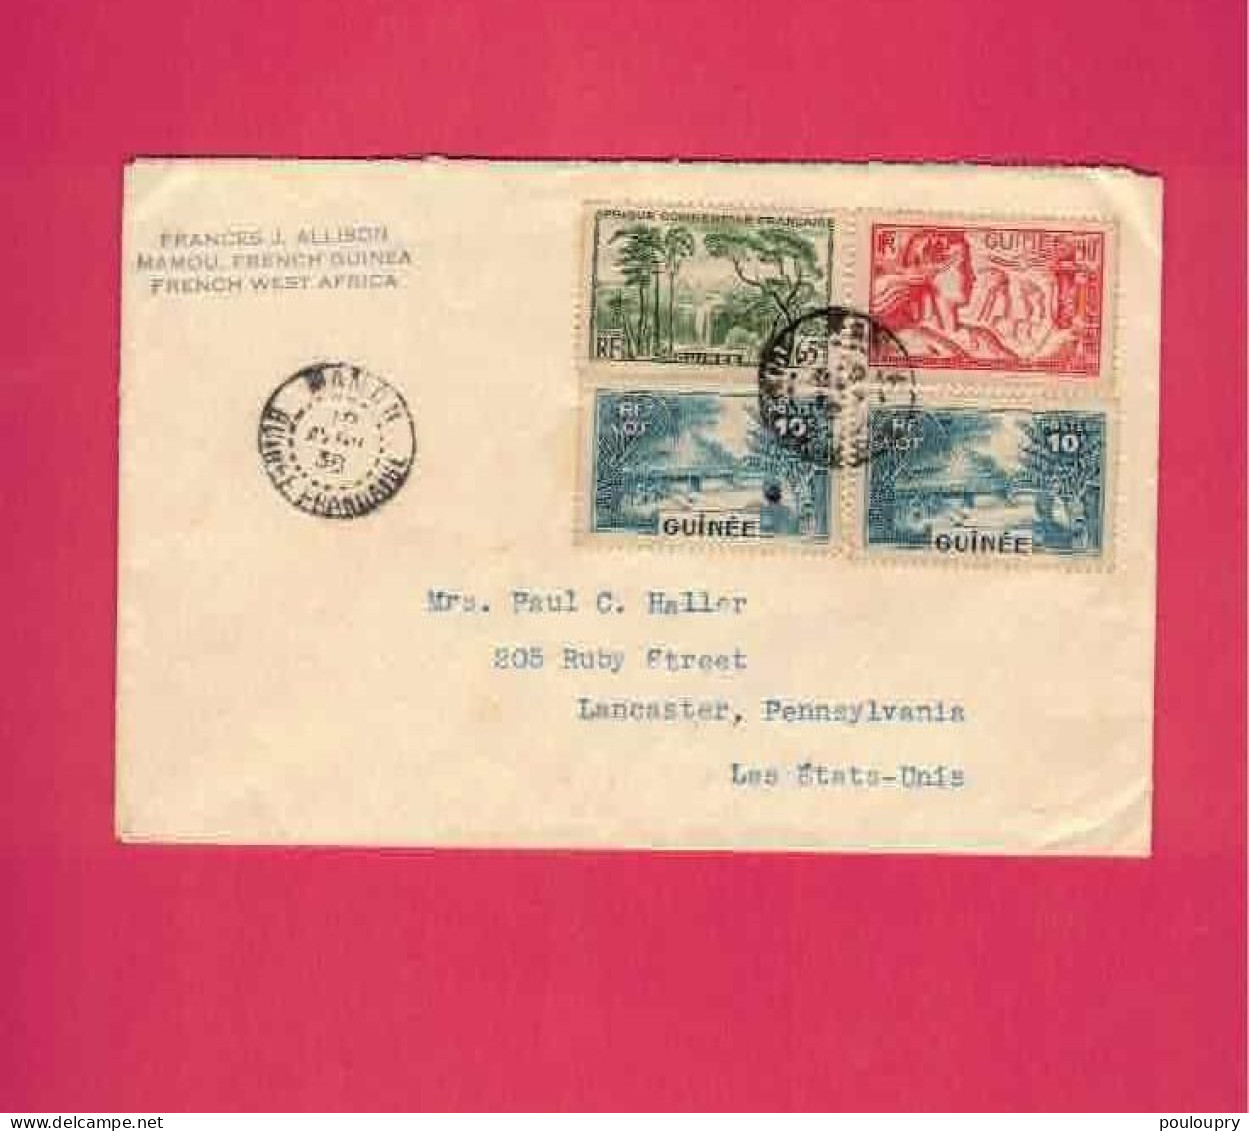 Lettre De 1938 Pour Les EUAN - YT N° 123, 129 X 2 Et 137 - Exposition Internationale De Paris - Covers & Documents